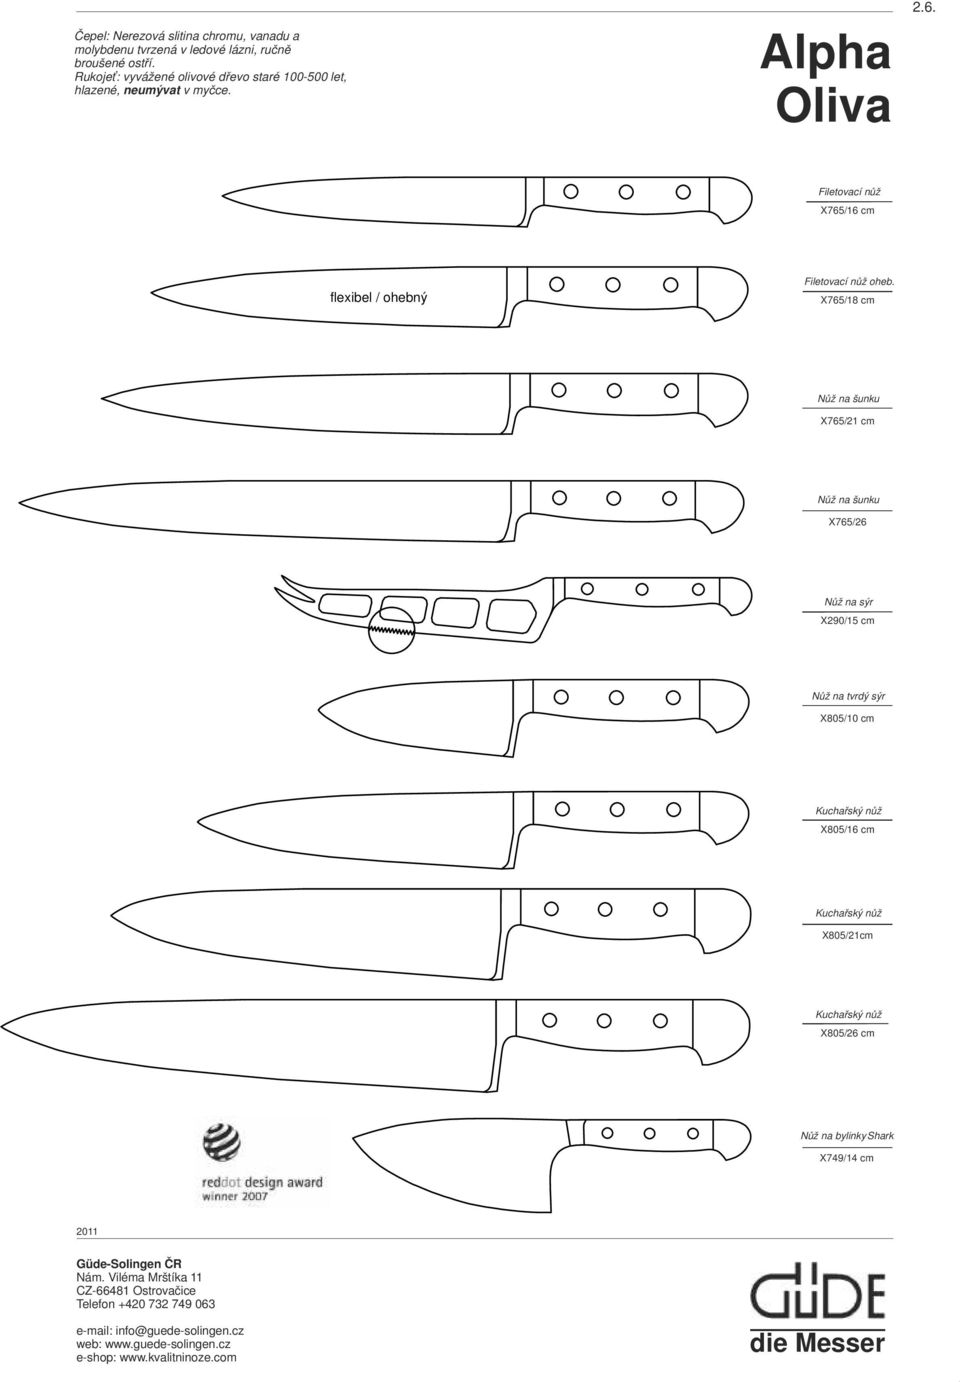 Filetovací nůž X765/16 cm flexibel / ohebný Filetovací nůž oheb.